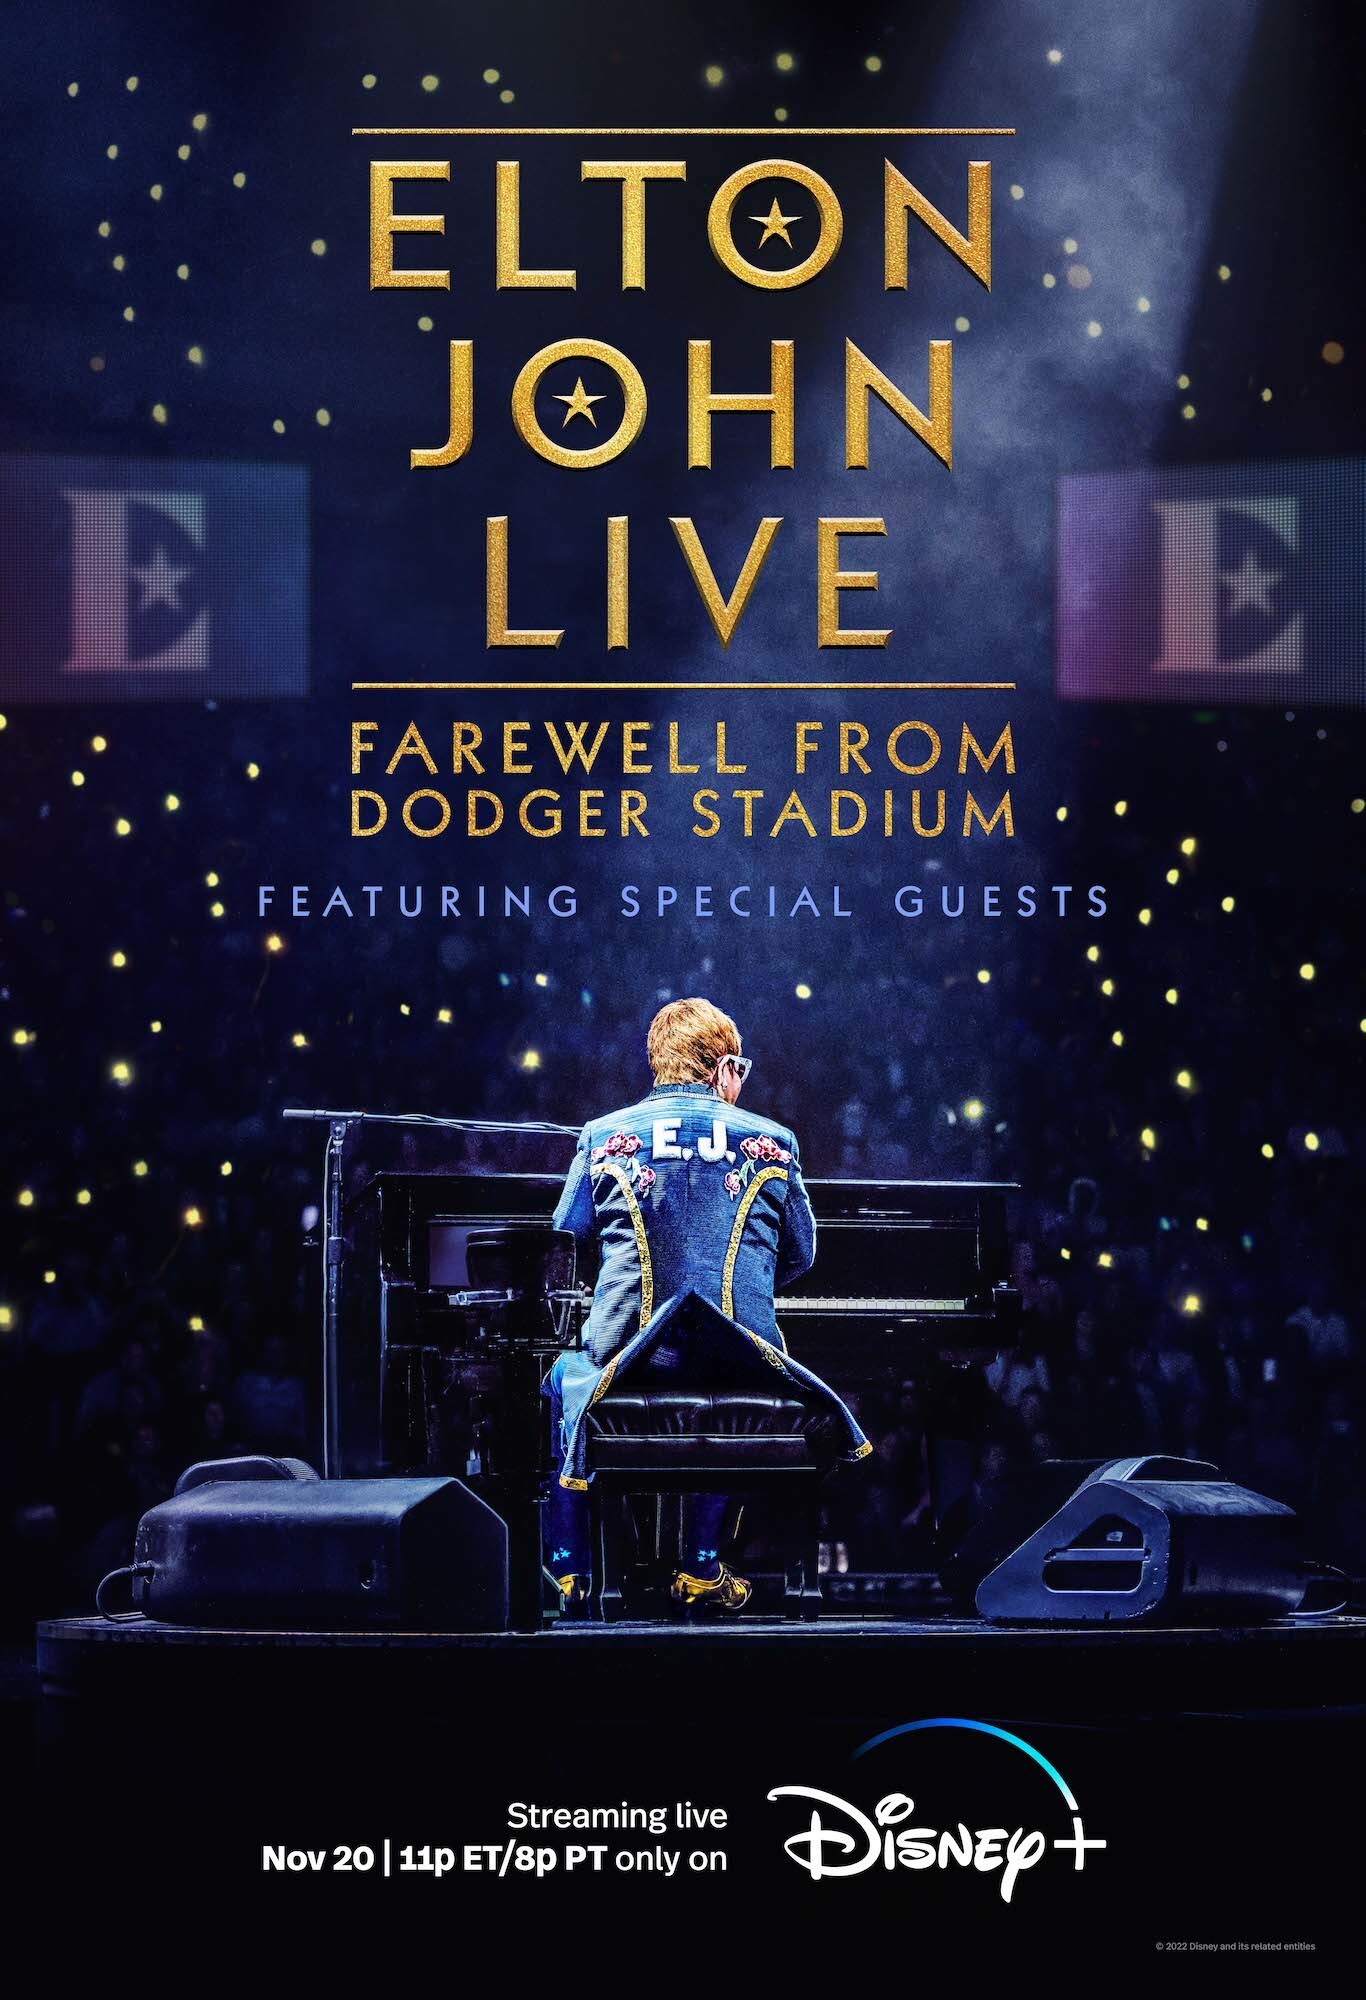 Disney+ Releases Key Art For “Elton John Live Farewell From Dodger Stadium” Disney Plus Press